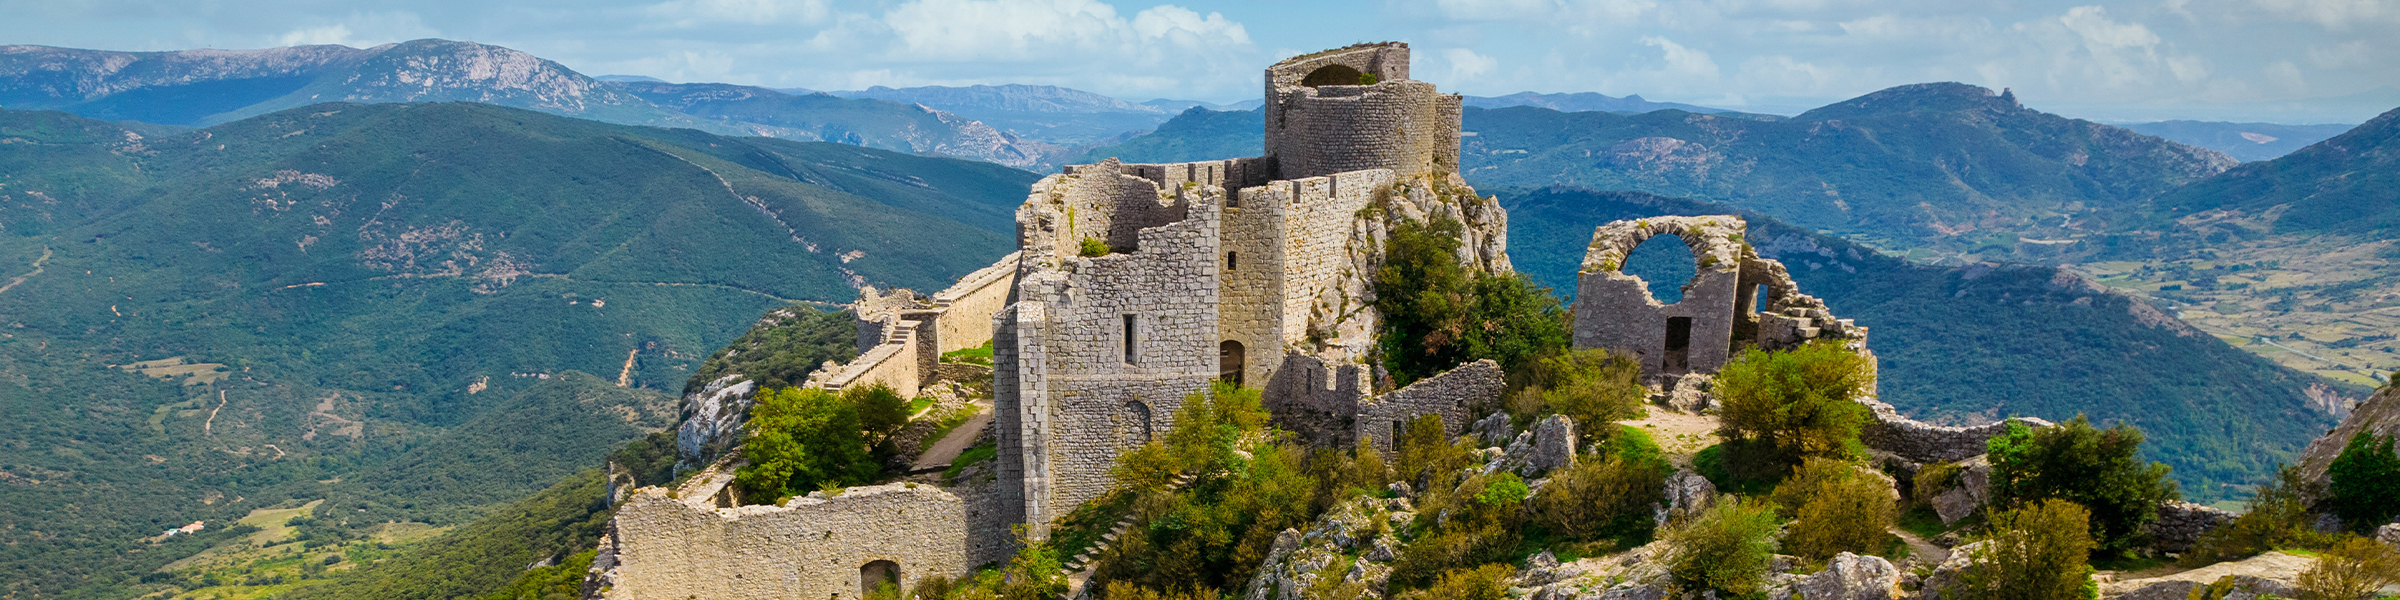 Cathar Castle France